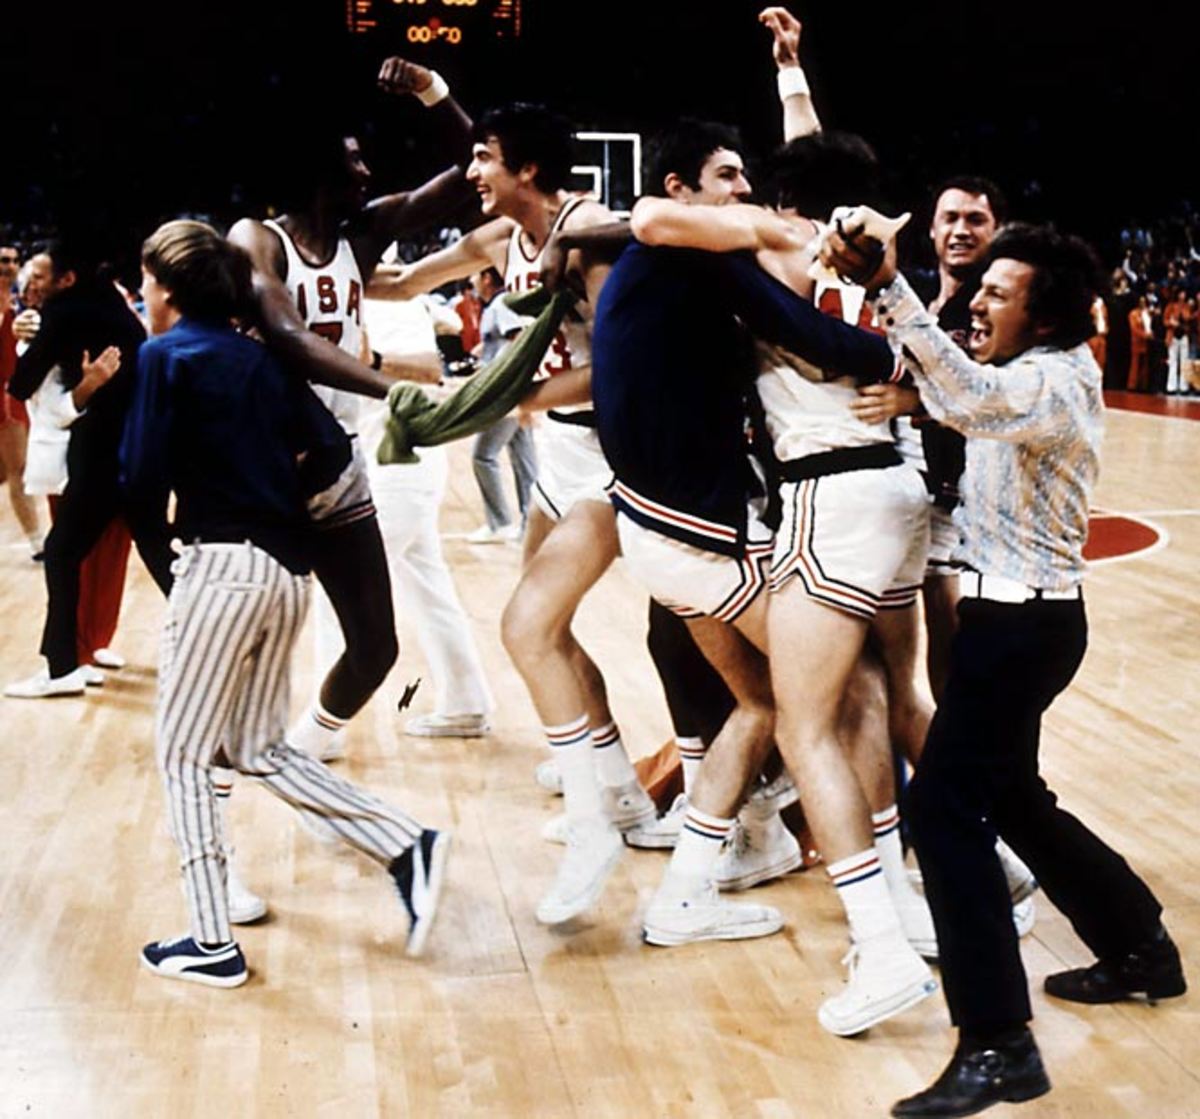 1972 Men's Basketball